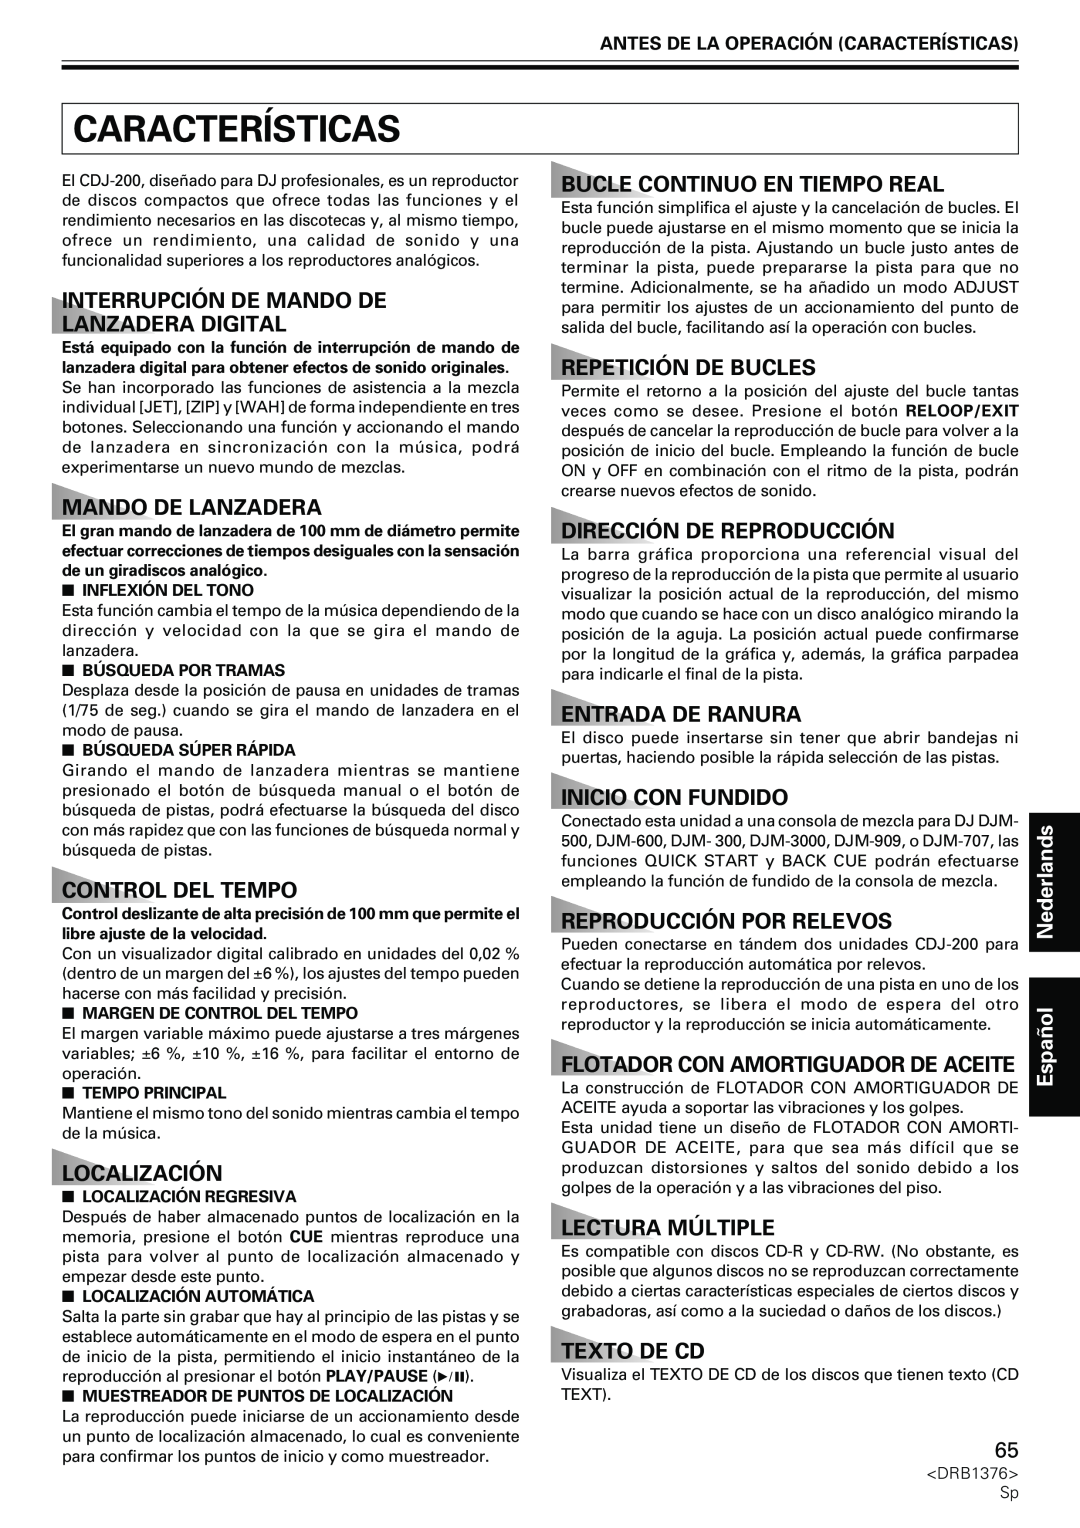 Pioneer CDJ-200 manual Características, Interrupción De Mando De Lanzadera Digital, Mando Delanzadera, Control Del Tempo 